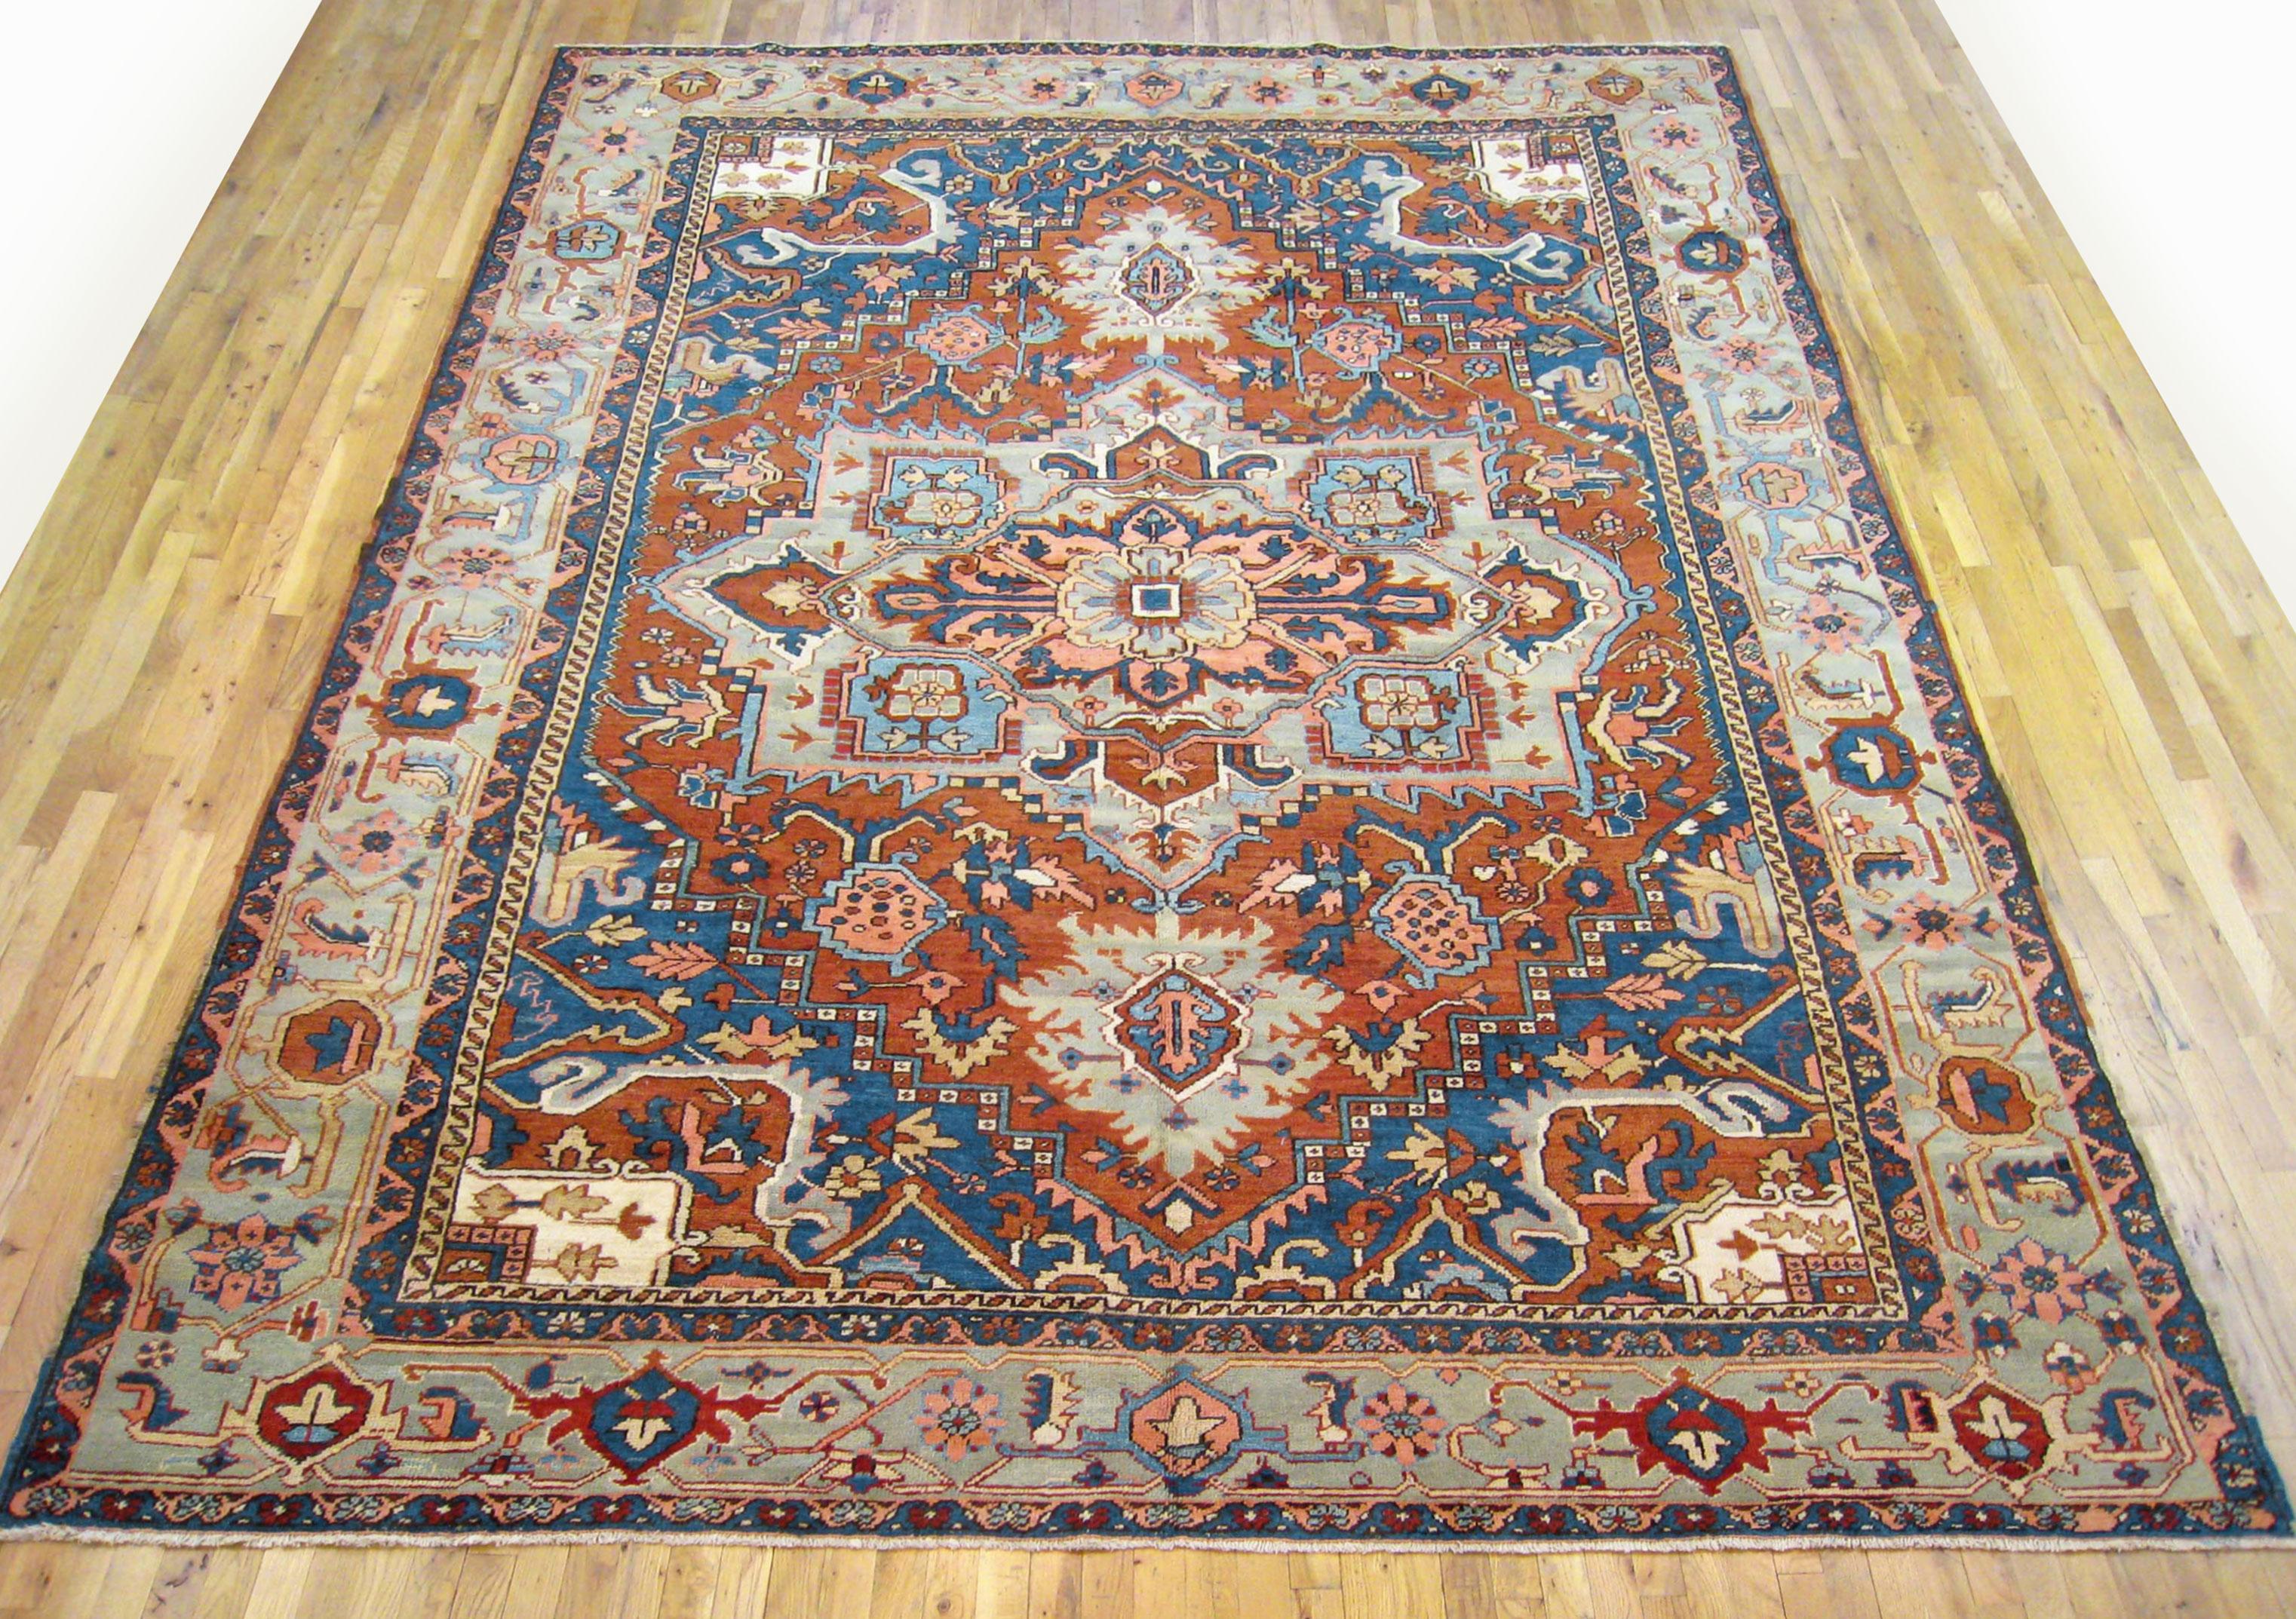 Antique Persian Heriz oriental rug, room size

An antique Persian Heriz oriental rug, size 12'4